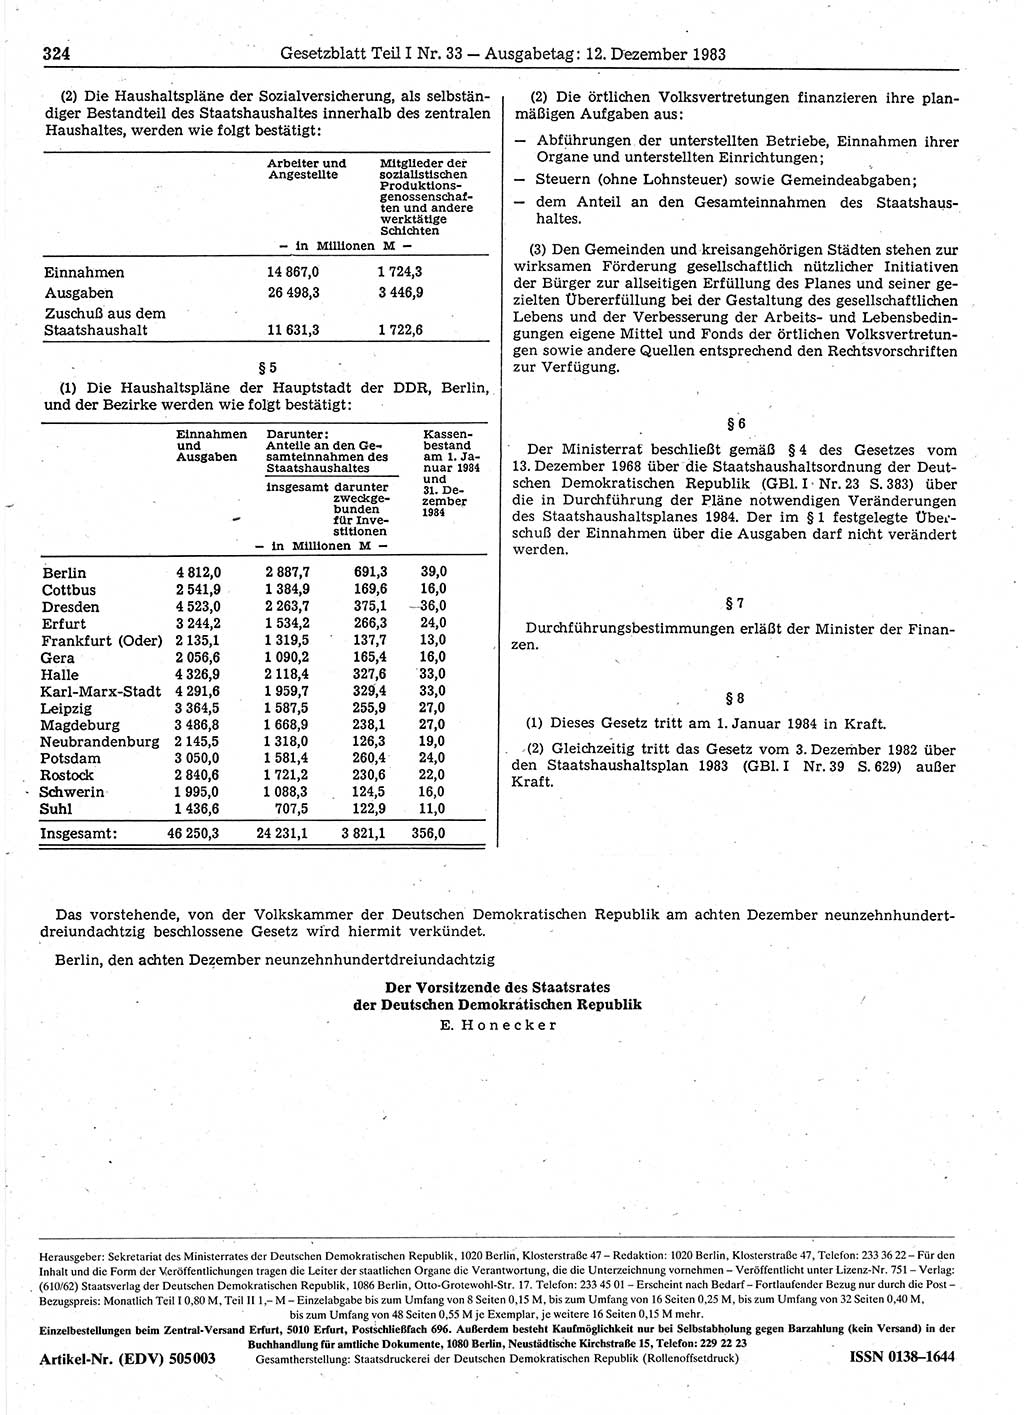 Gesetzblatt (GBl.) der Deutschen Demokratischen Republik (DDR) Teil Ⅰ 1983, Seite 324 (GBl. DDR Ⅰ 1983, S. 324)